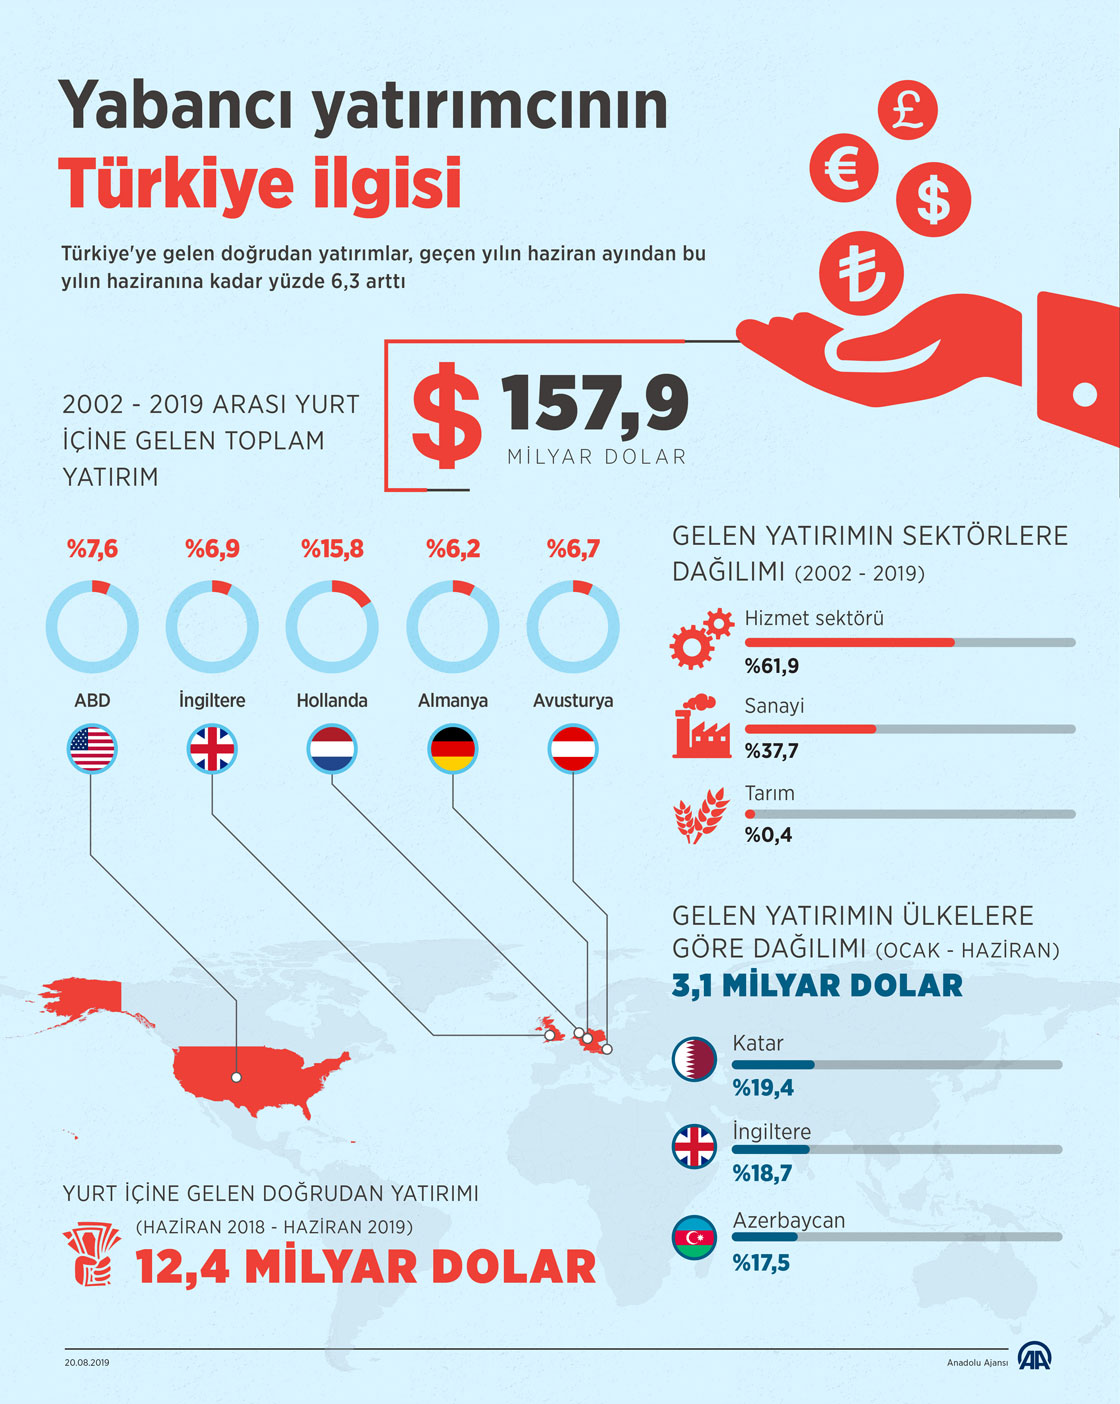 Yabancı yatırımcının Türkiye ilgisi